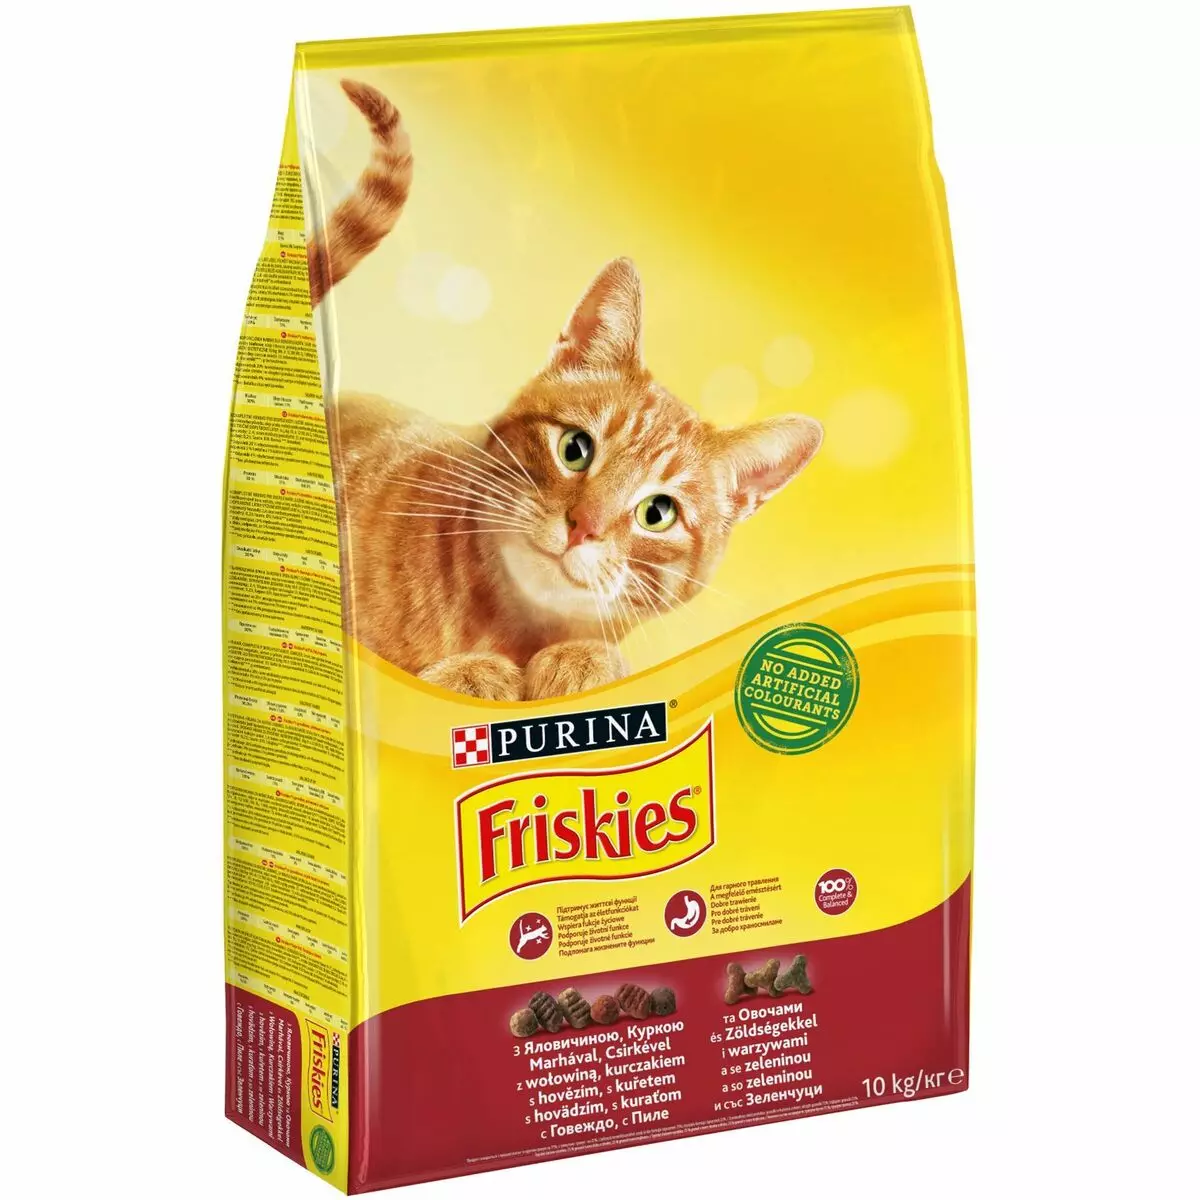 Suva hrana za Felix mačke: sastav, mačka hrana za odrasle mačke u pakovanjima 1,5 kg, pregled kitty feed 11349_3